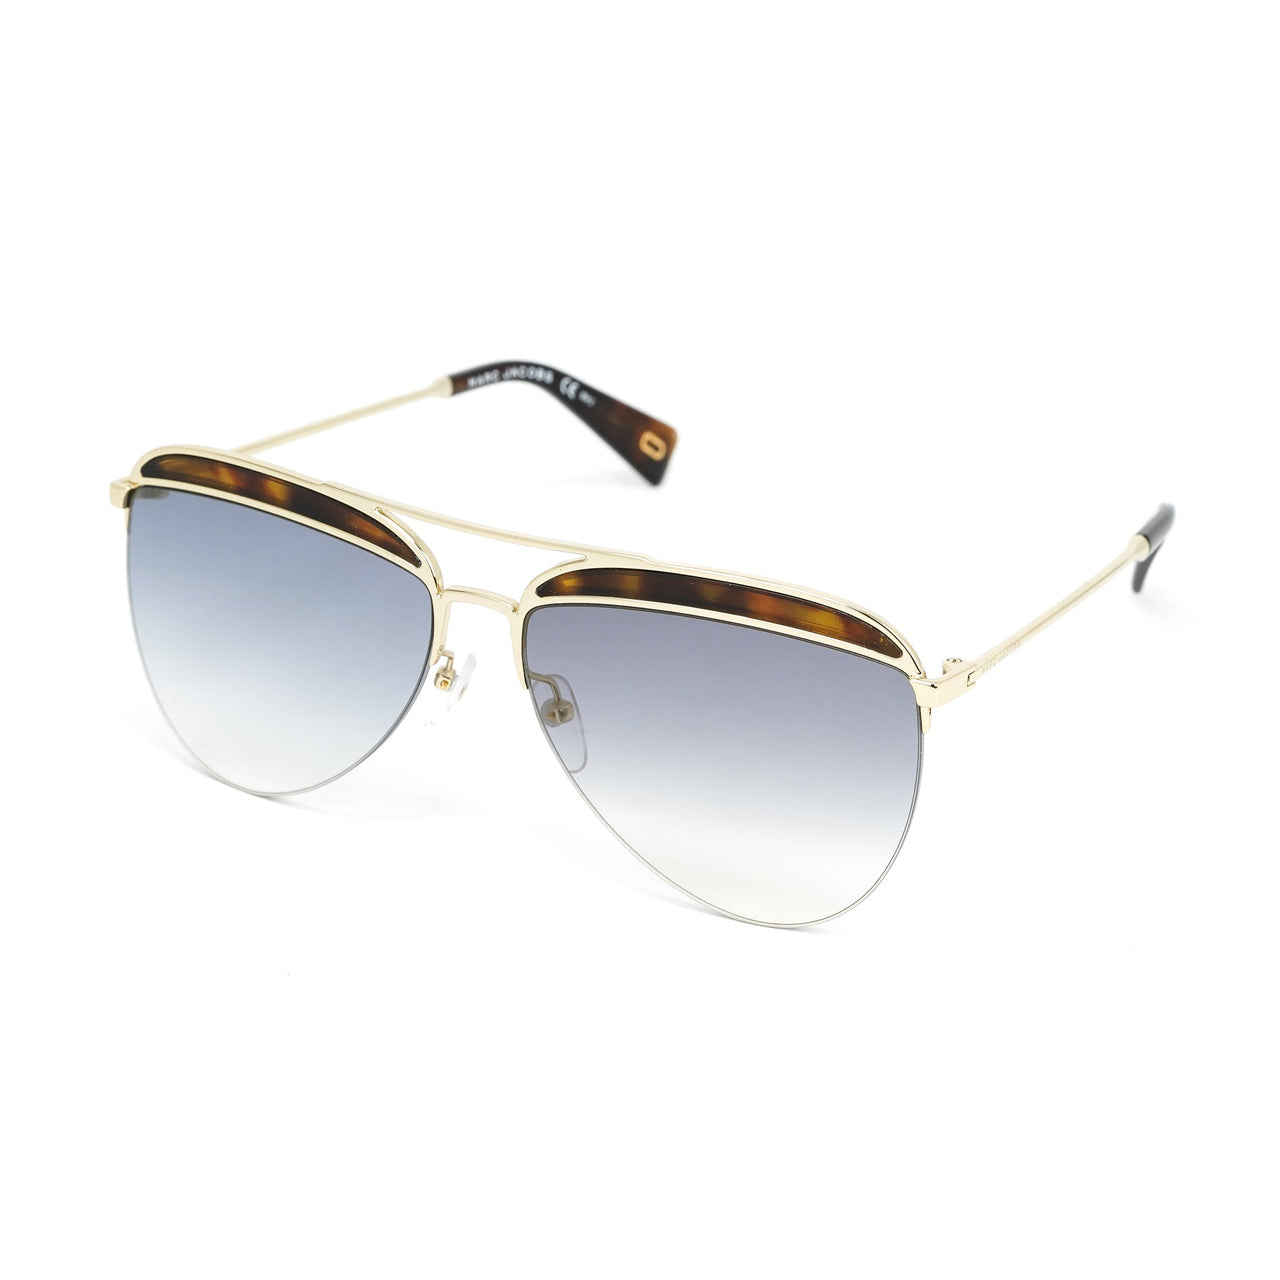 Marc Jacobs Women's Pilot Sunglasses Gold Gradient Blue MARC 268/S 086 Havana